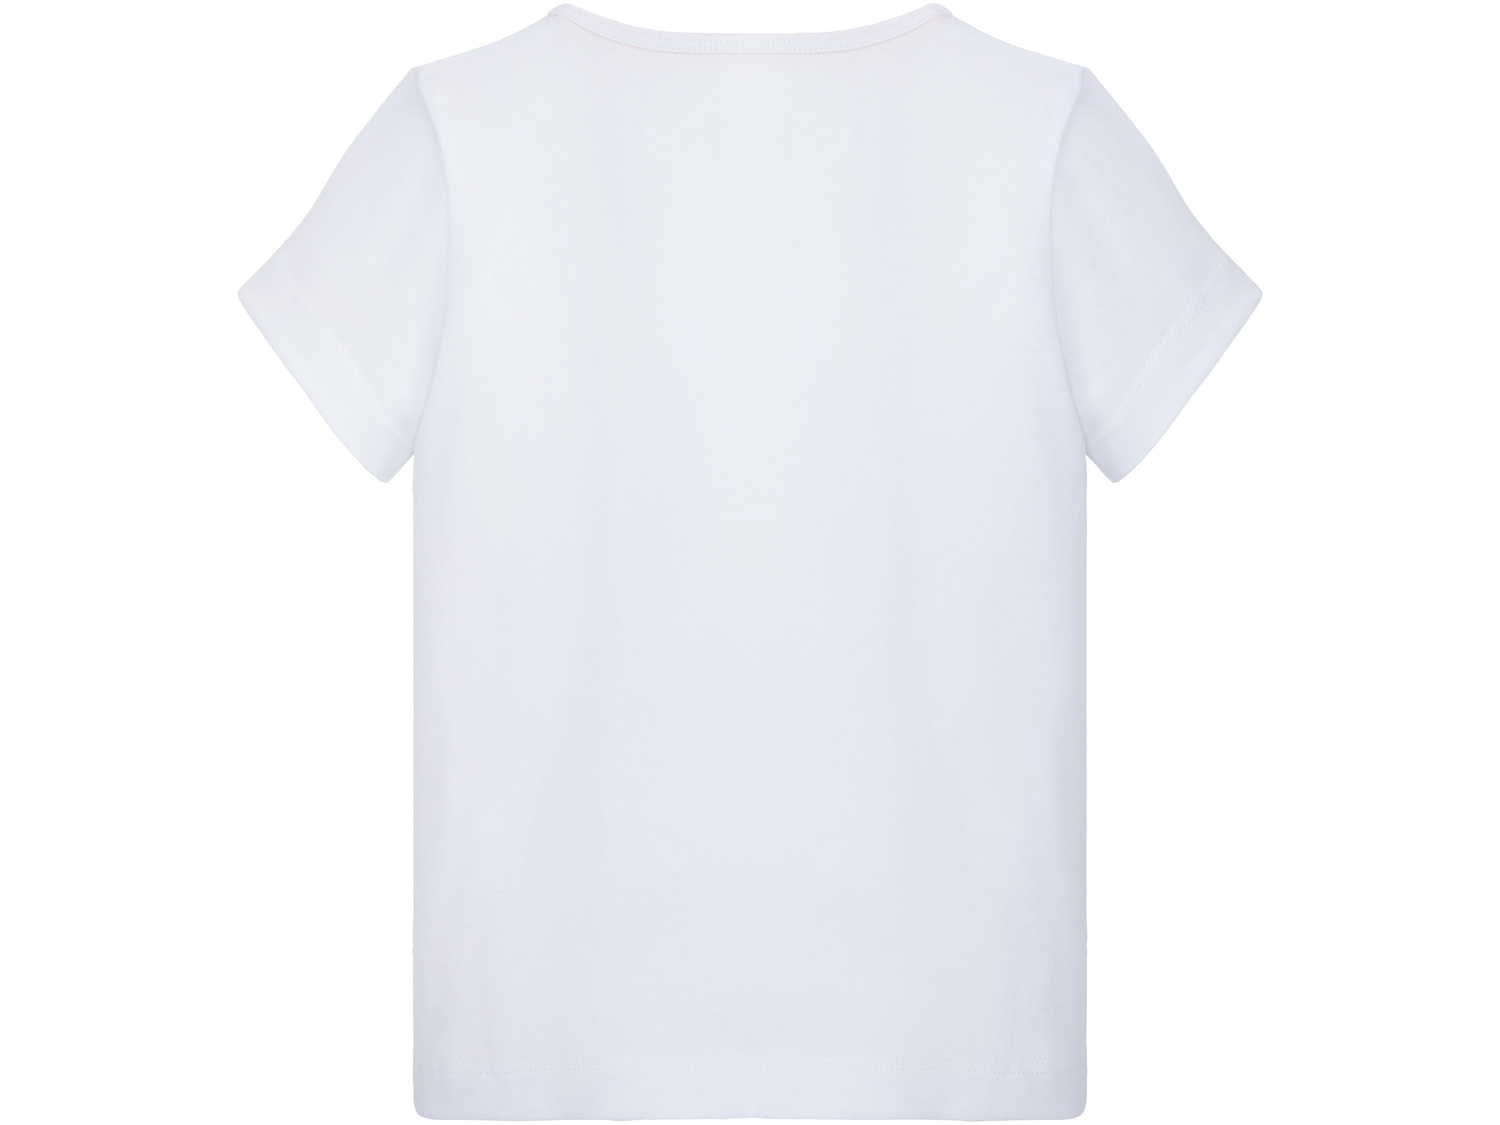 T-shirt dziewczęcy Lupilu, cena 7,99 PLN 
- 100% bawełny
- rozmiary: 86-116
Dostępne ...